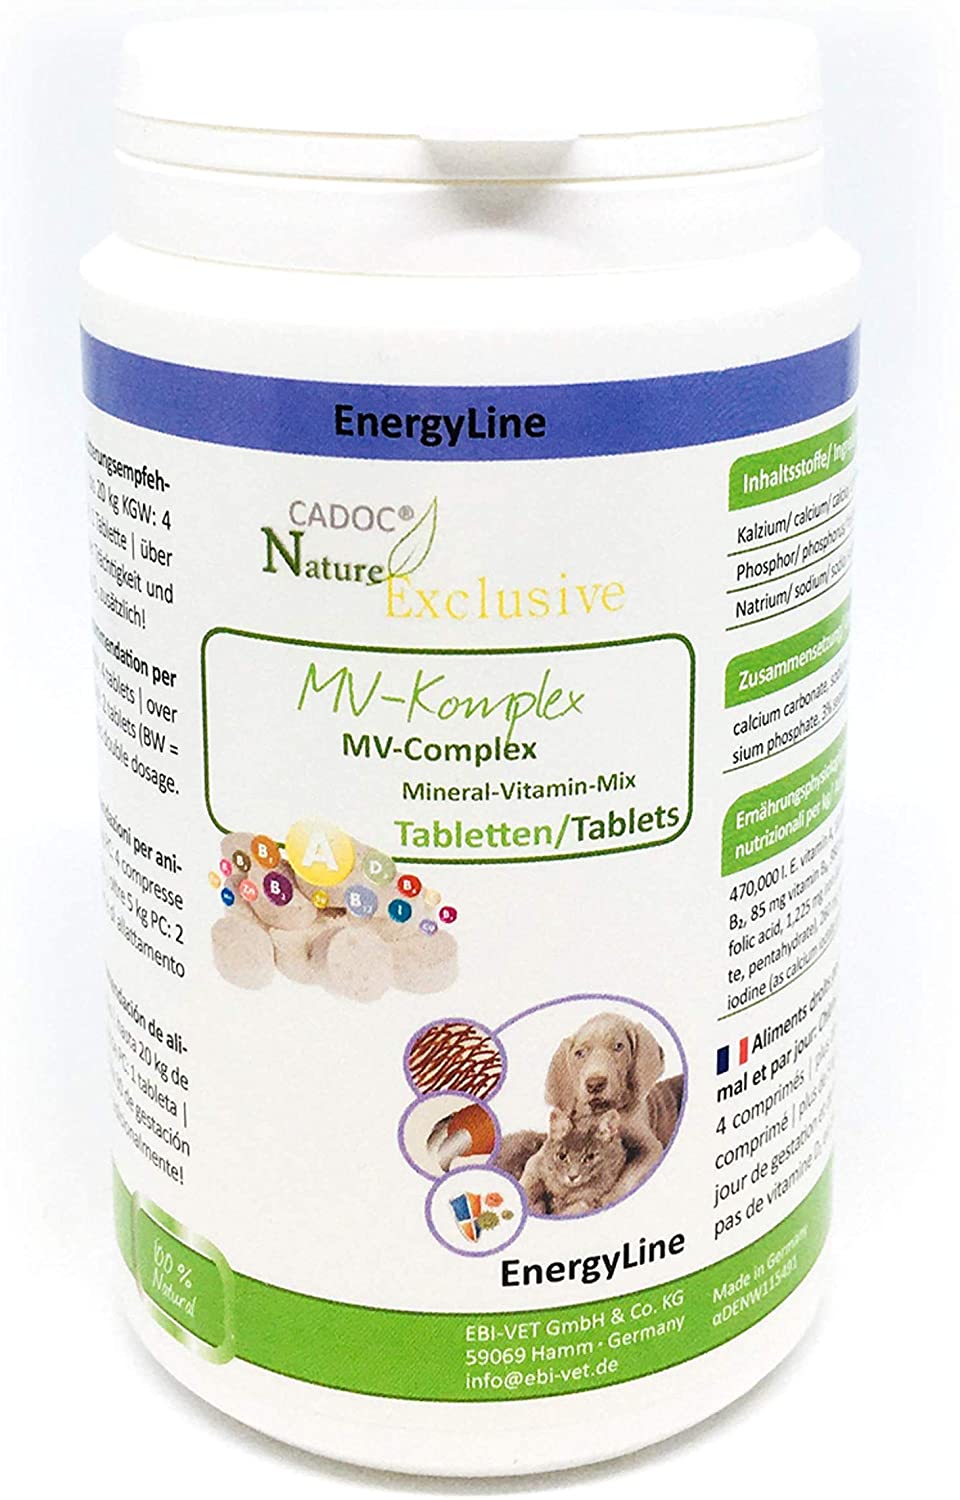  Cadoc - Nature Exclusive MV-Complex (complejo de minerales y vitaminas) 